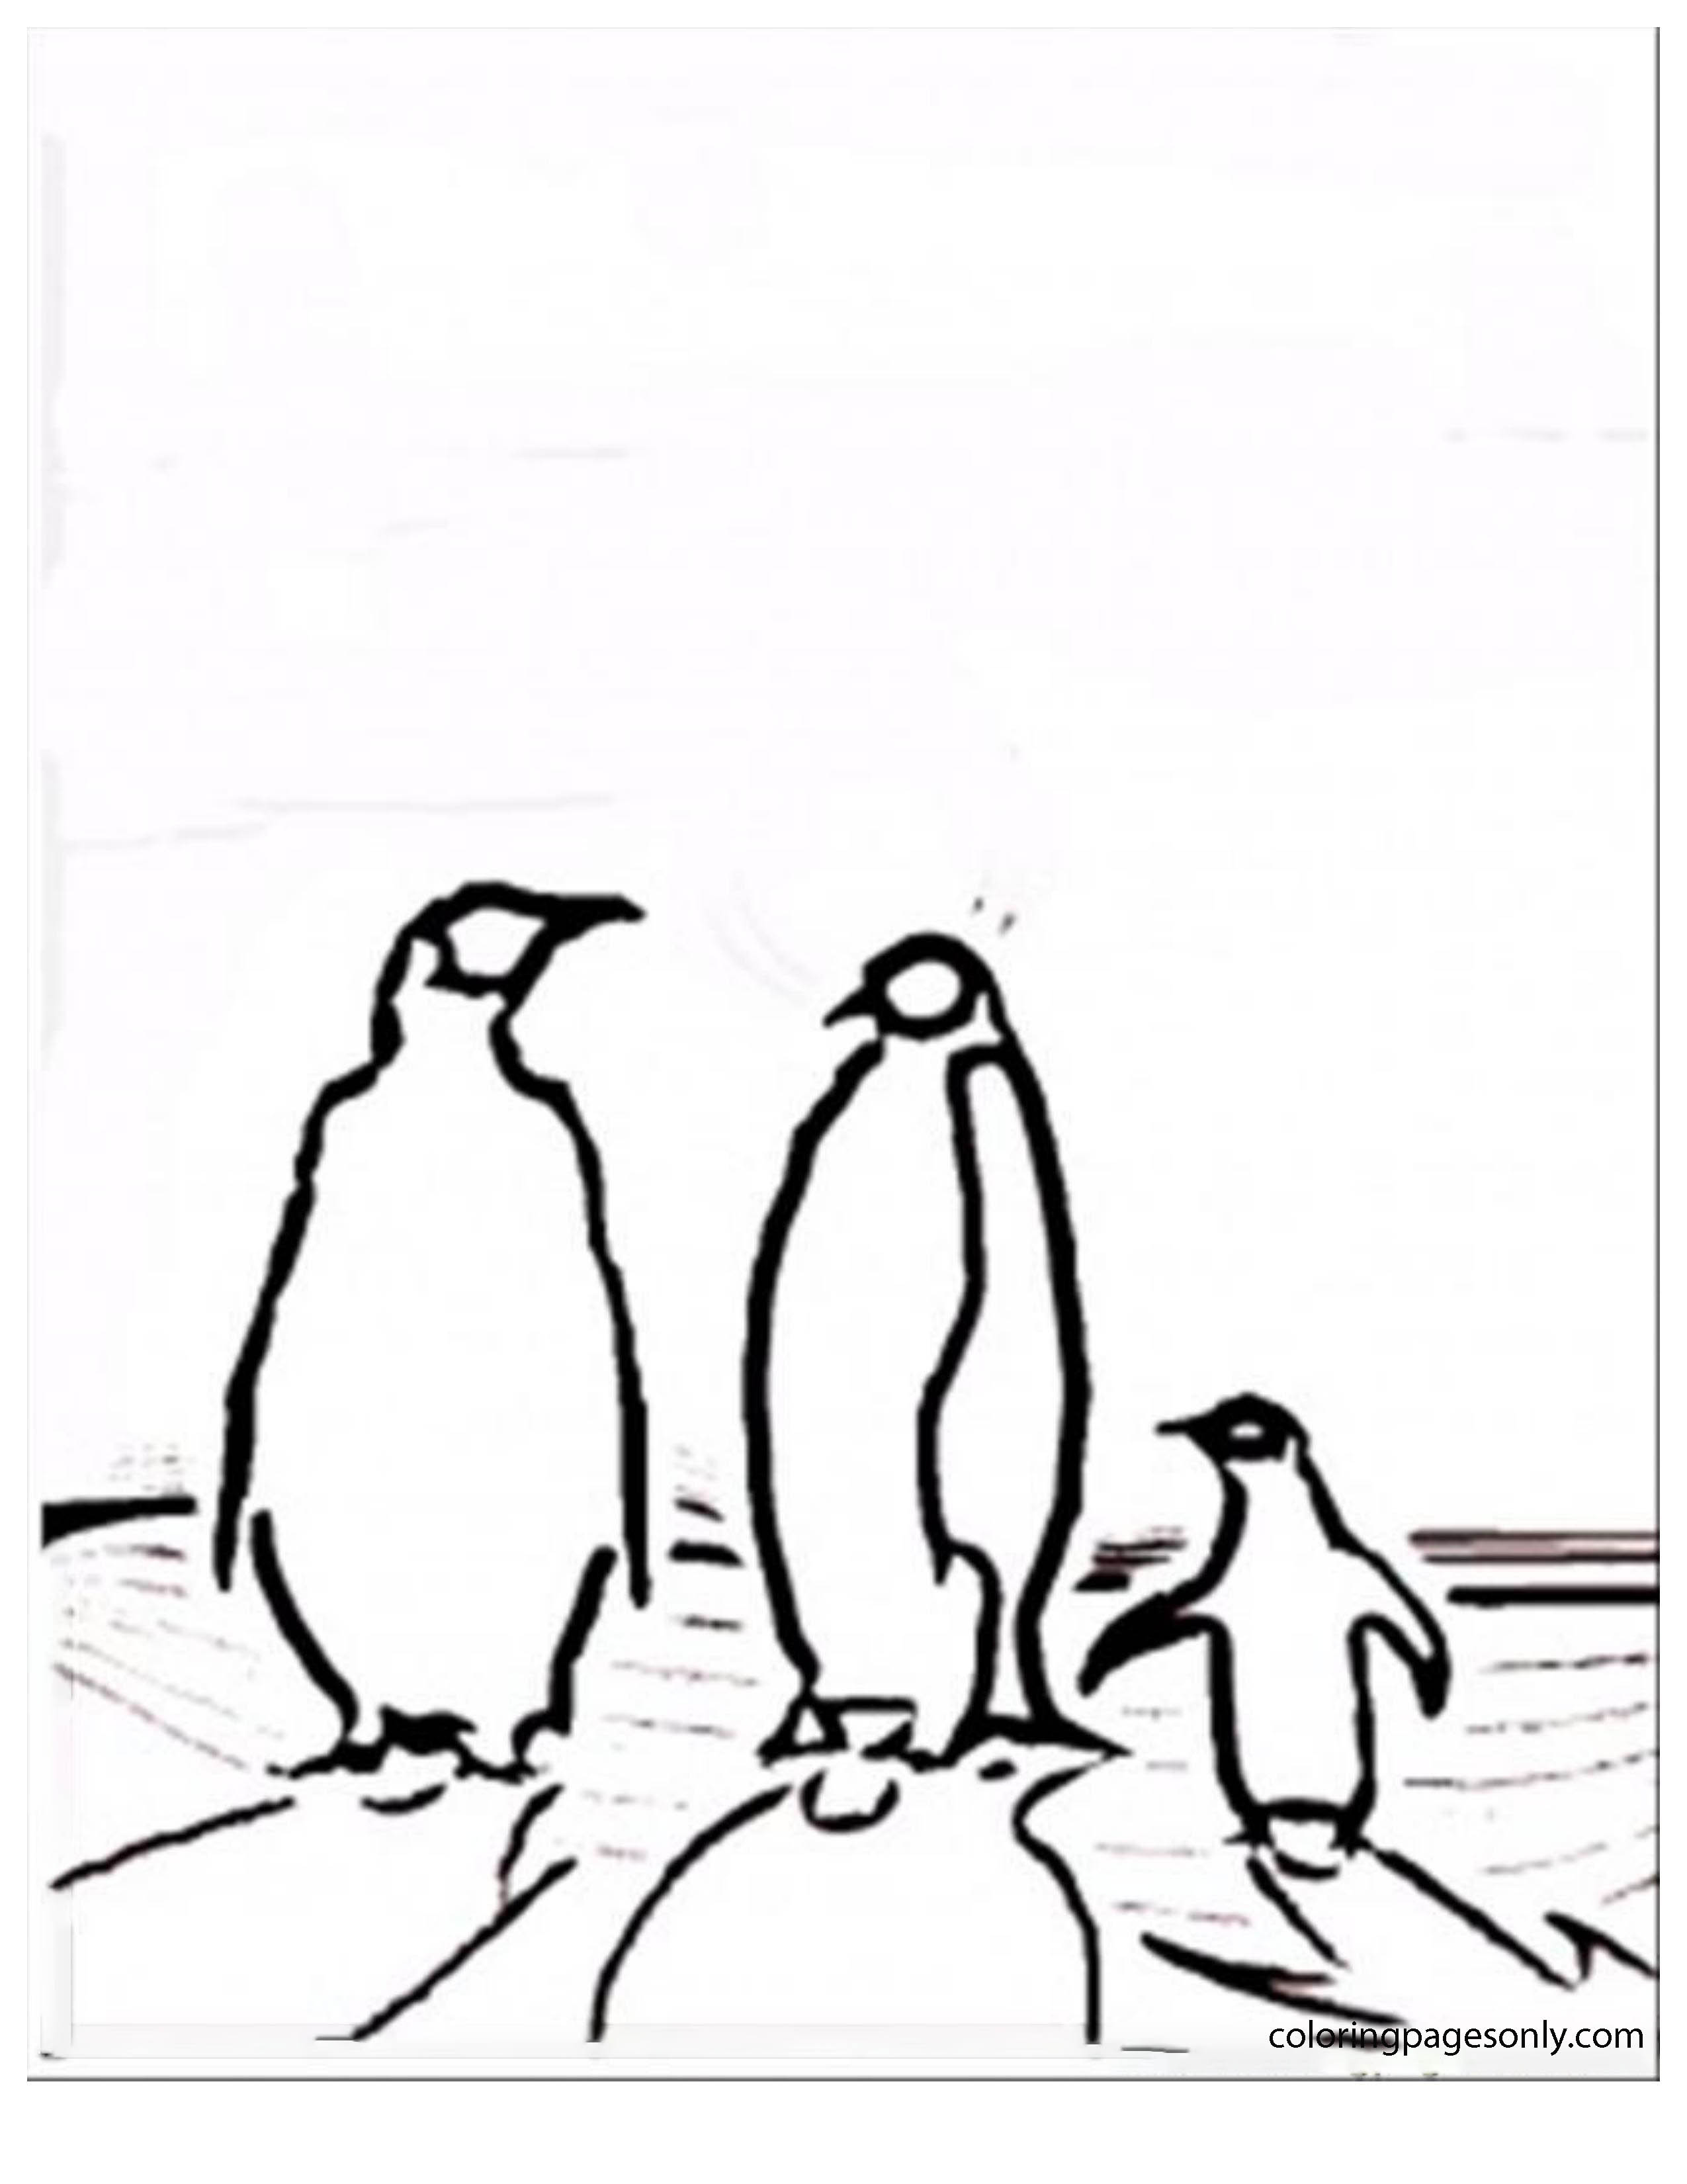 Famiglia di pinguini del Polo Nord e del Polo Sud